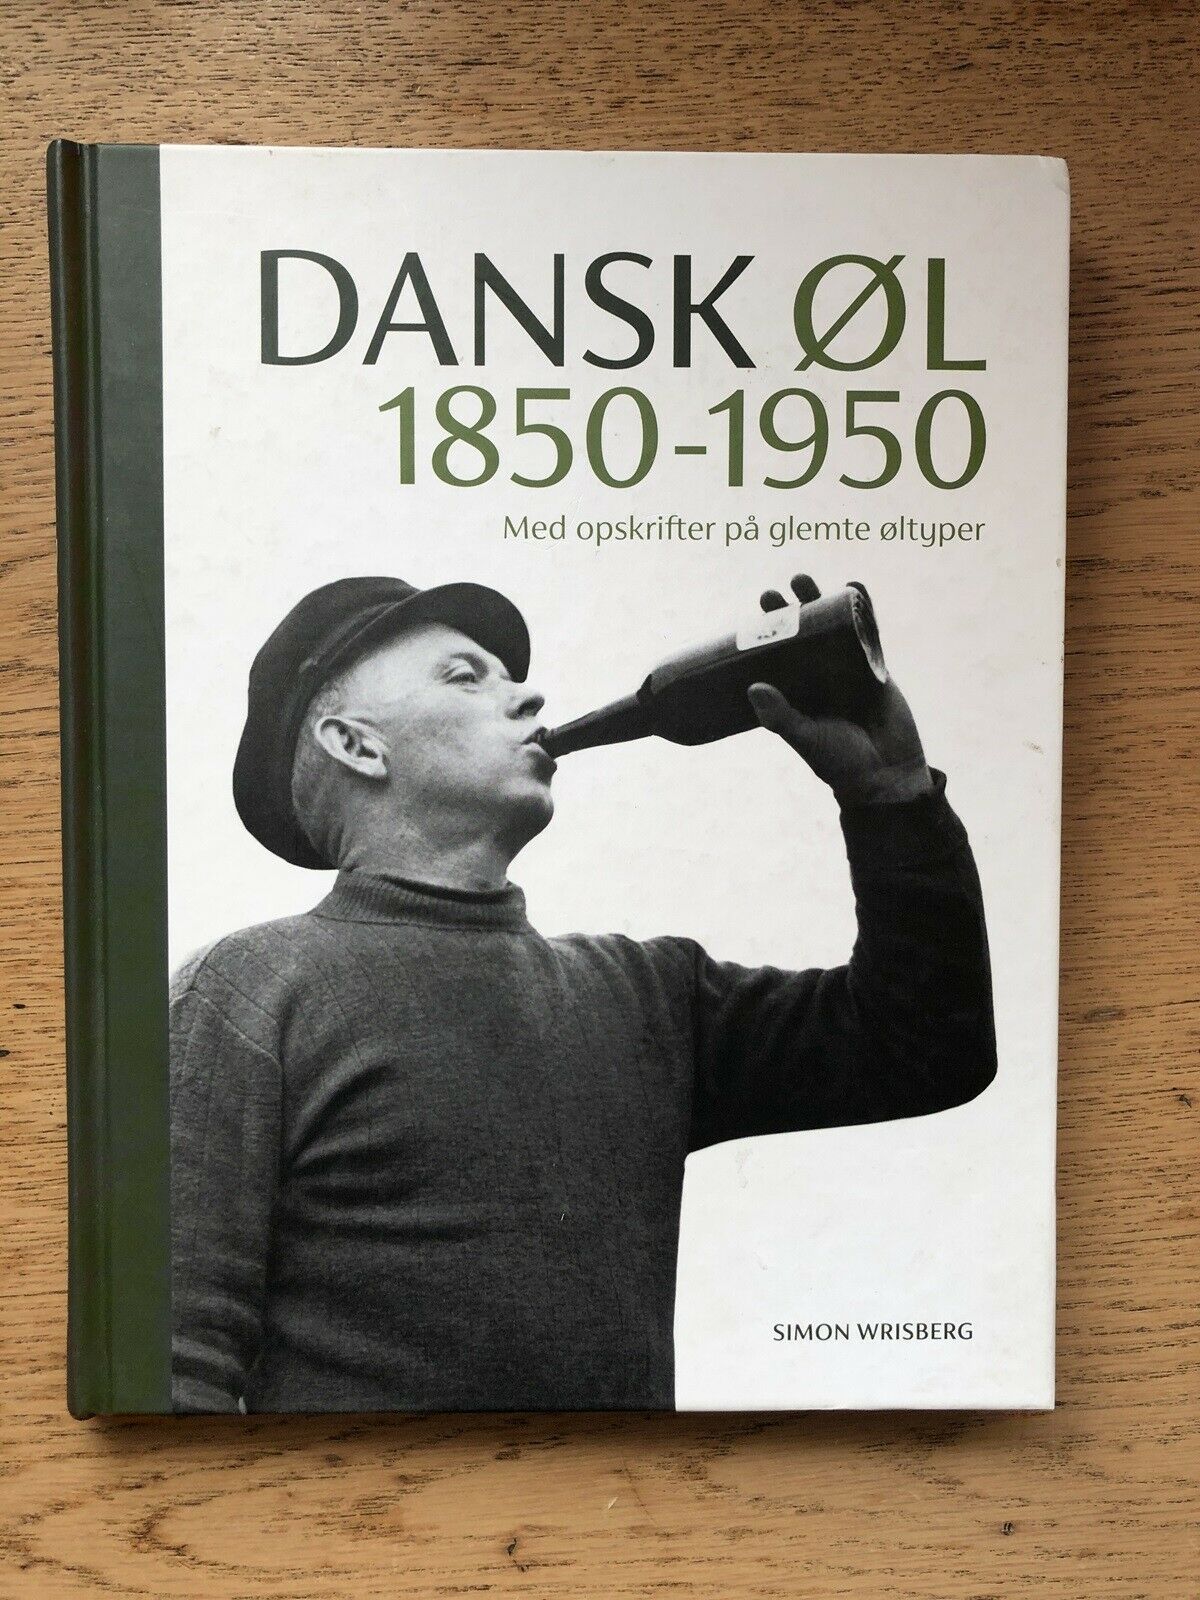 Uluru Bred vifte her Dansk øl 1850-1950 (svag røglugt), Simon Wrisberg, emne: mad og vin –  dba.dk – Køb og Salg af Nyt og Brugt